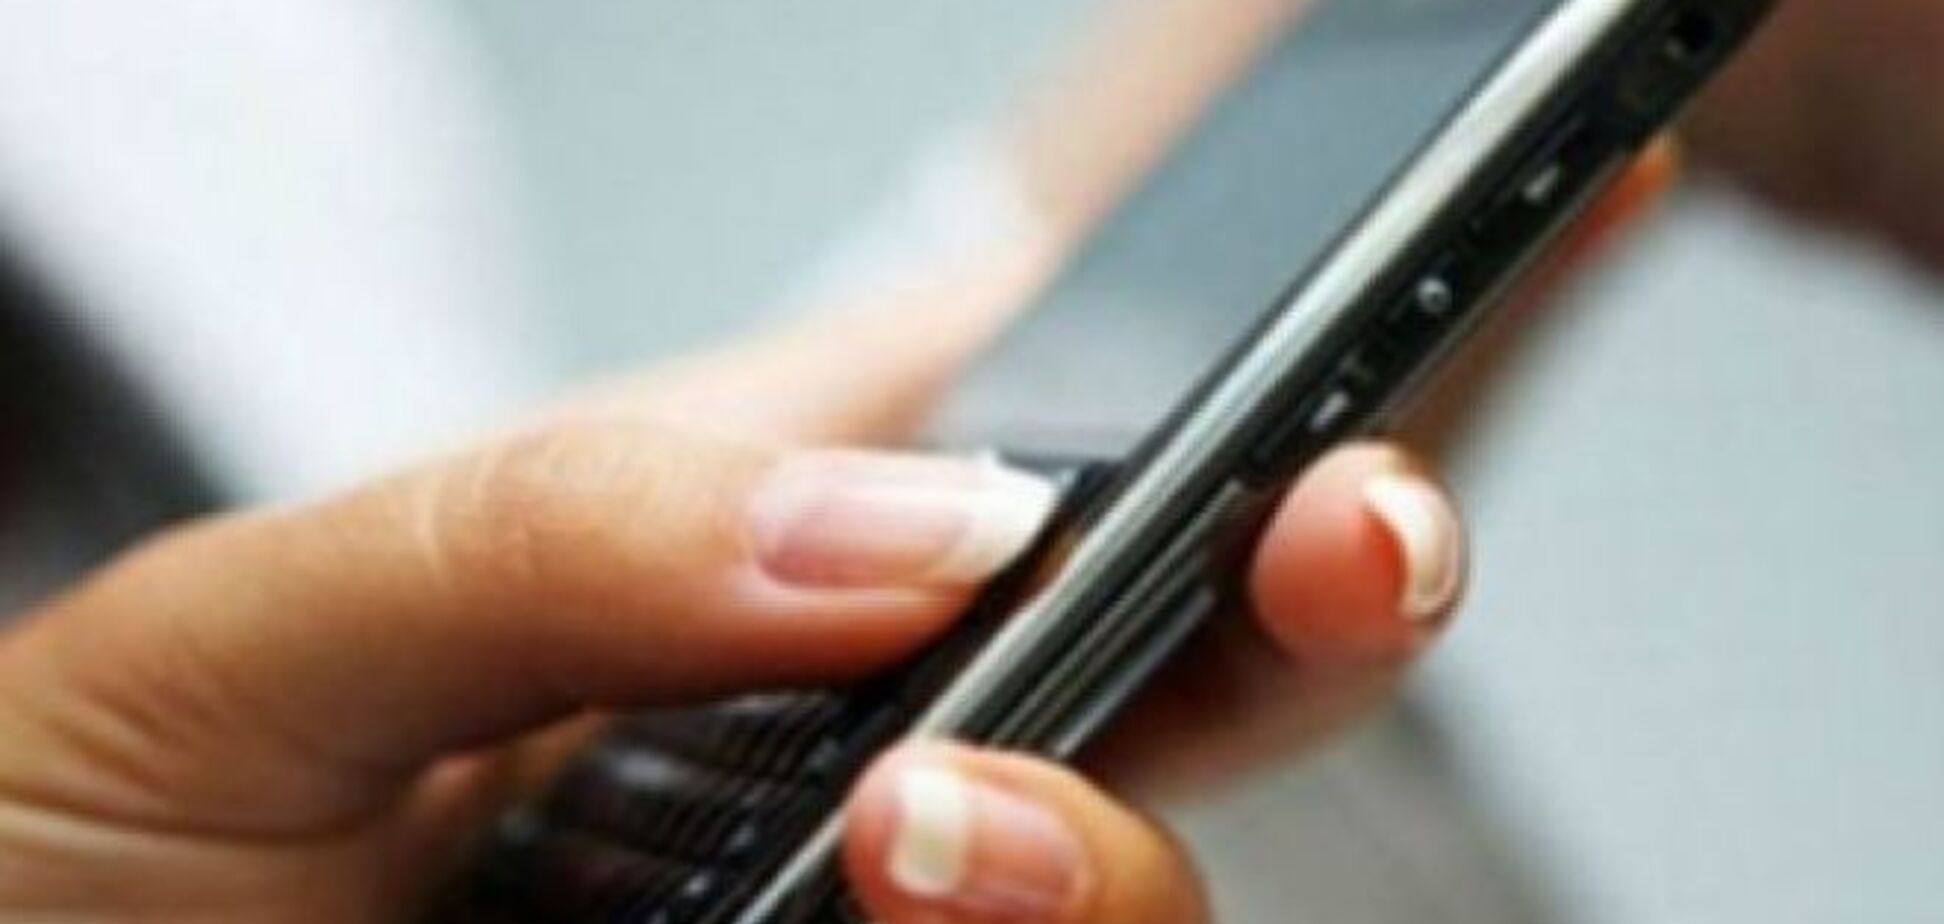 Українці поскаржилися на погіршення мобільного зв'язку в країні: дзвінки обриваються, мережа зникає